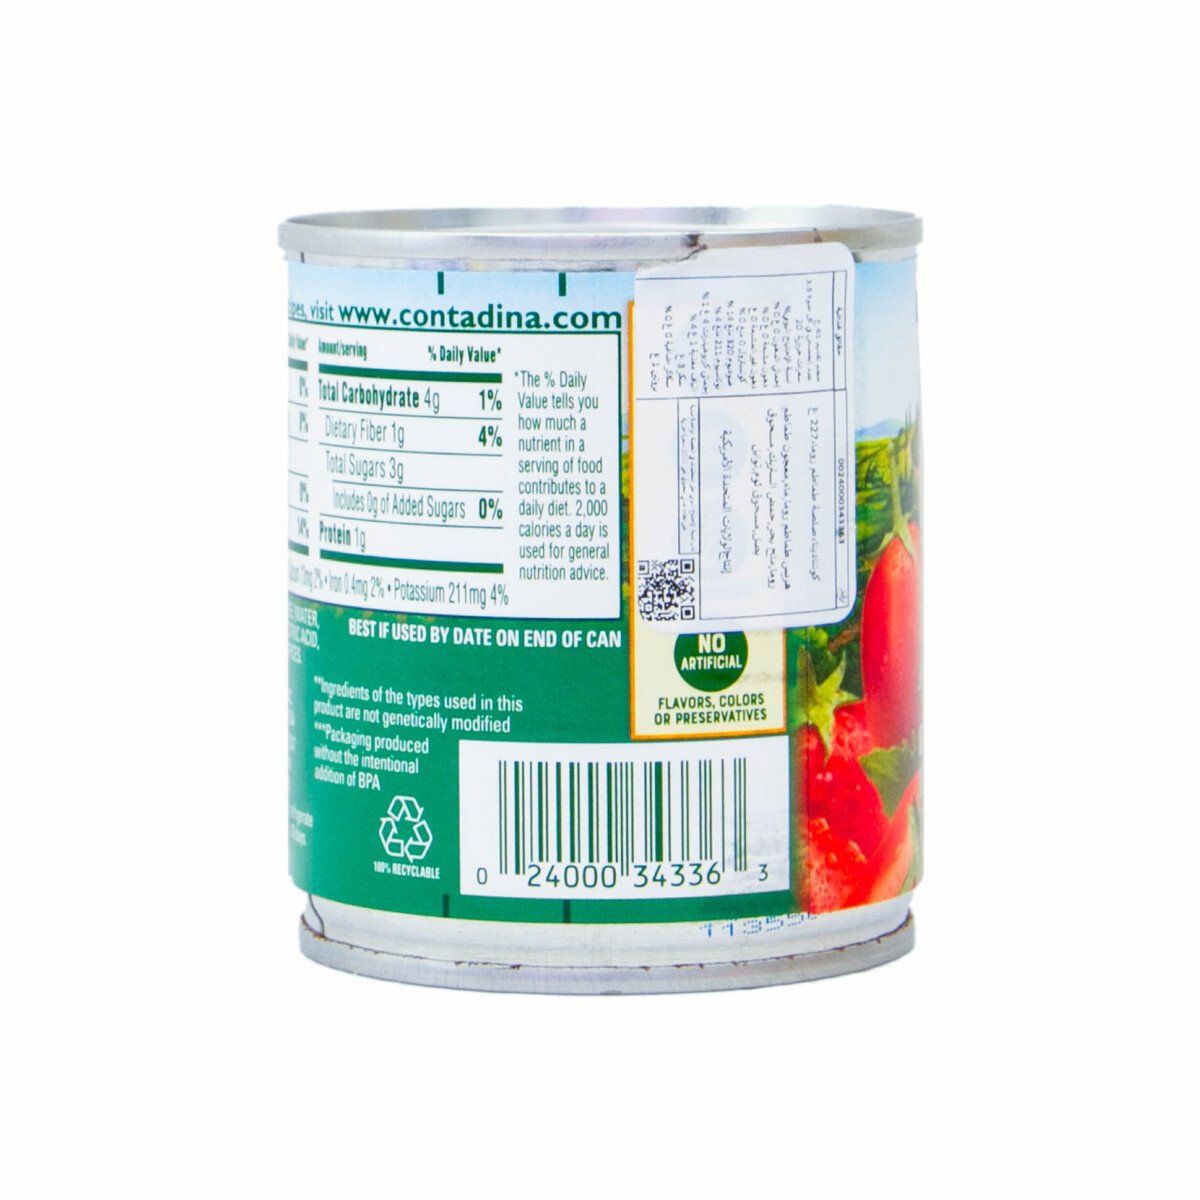 Contadina Roma Tomatoes Sauce 227 g